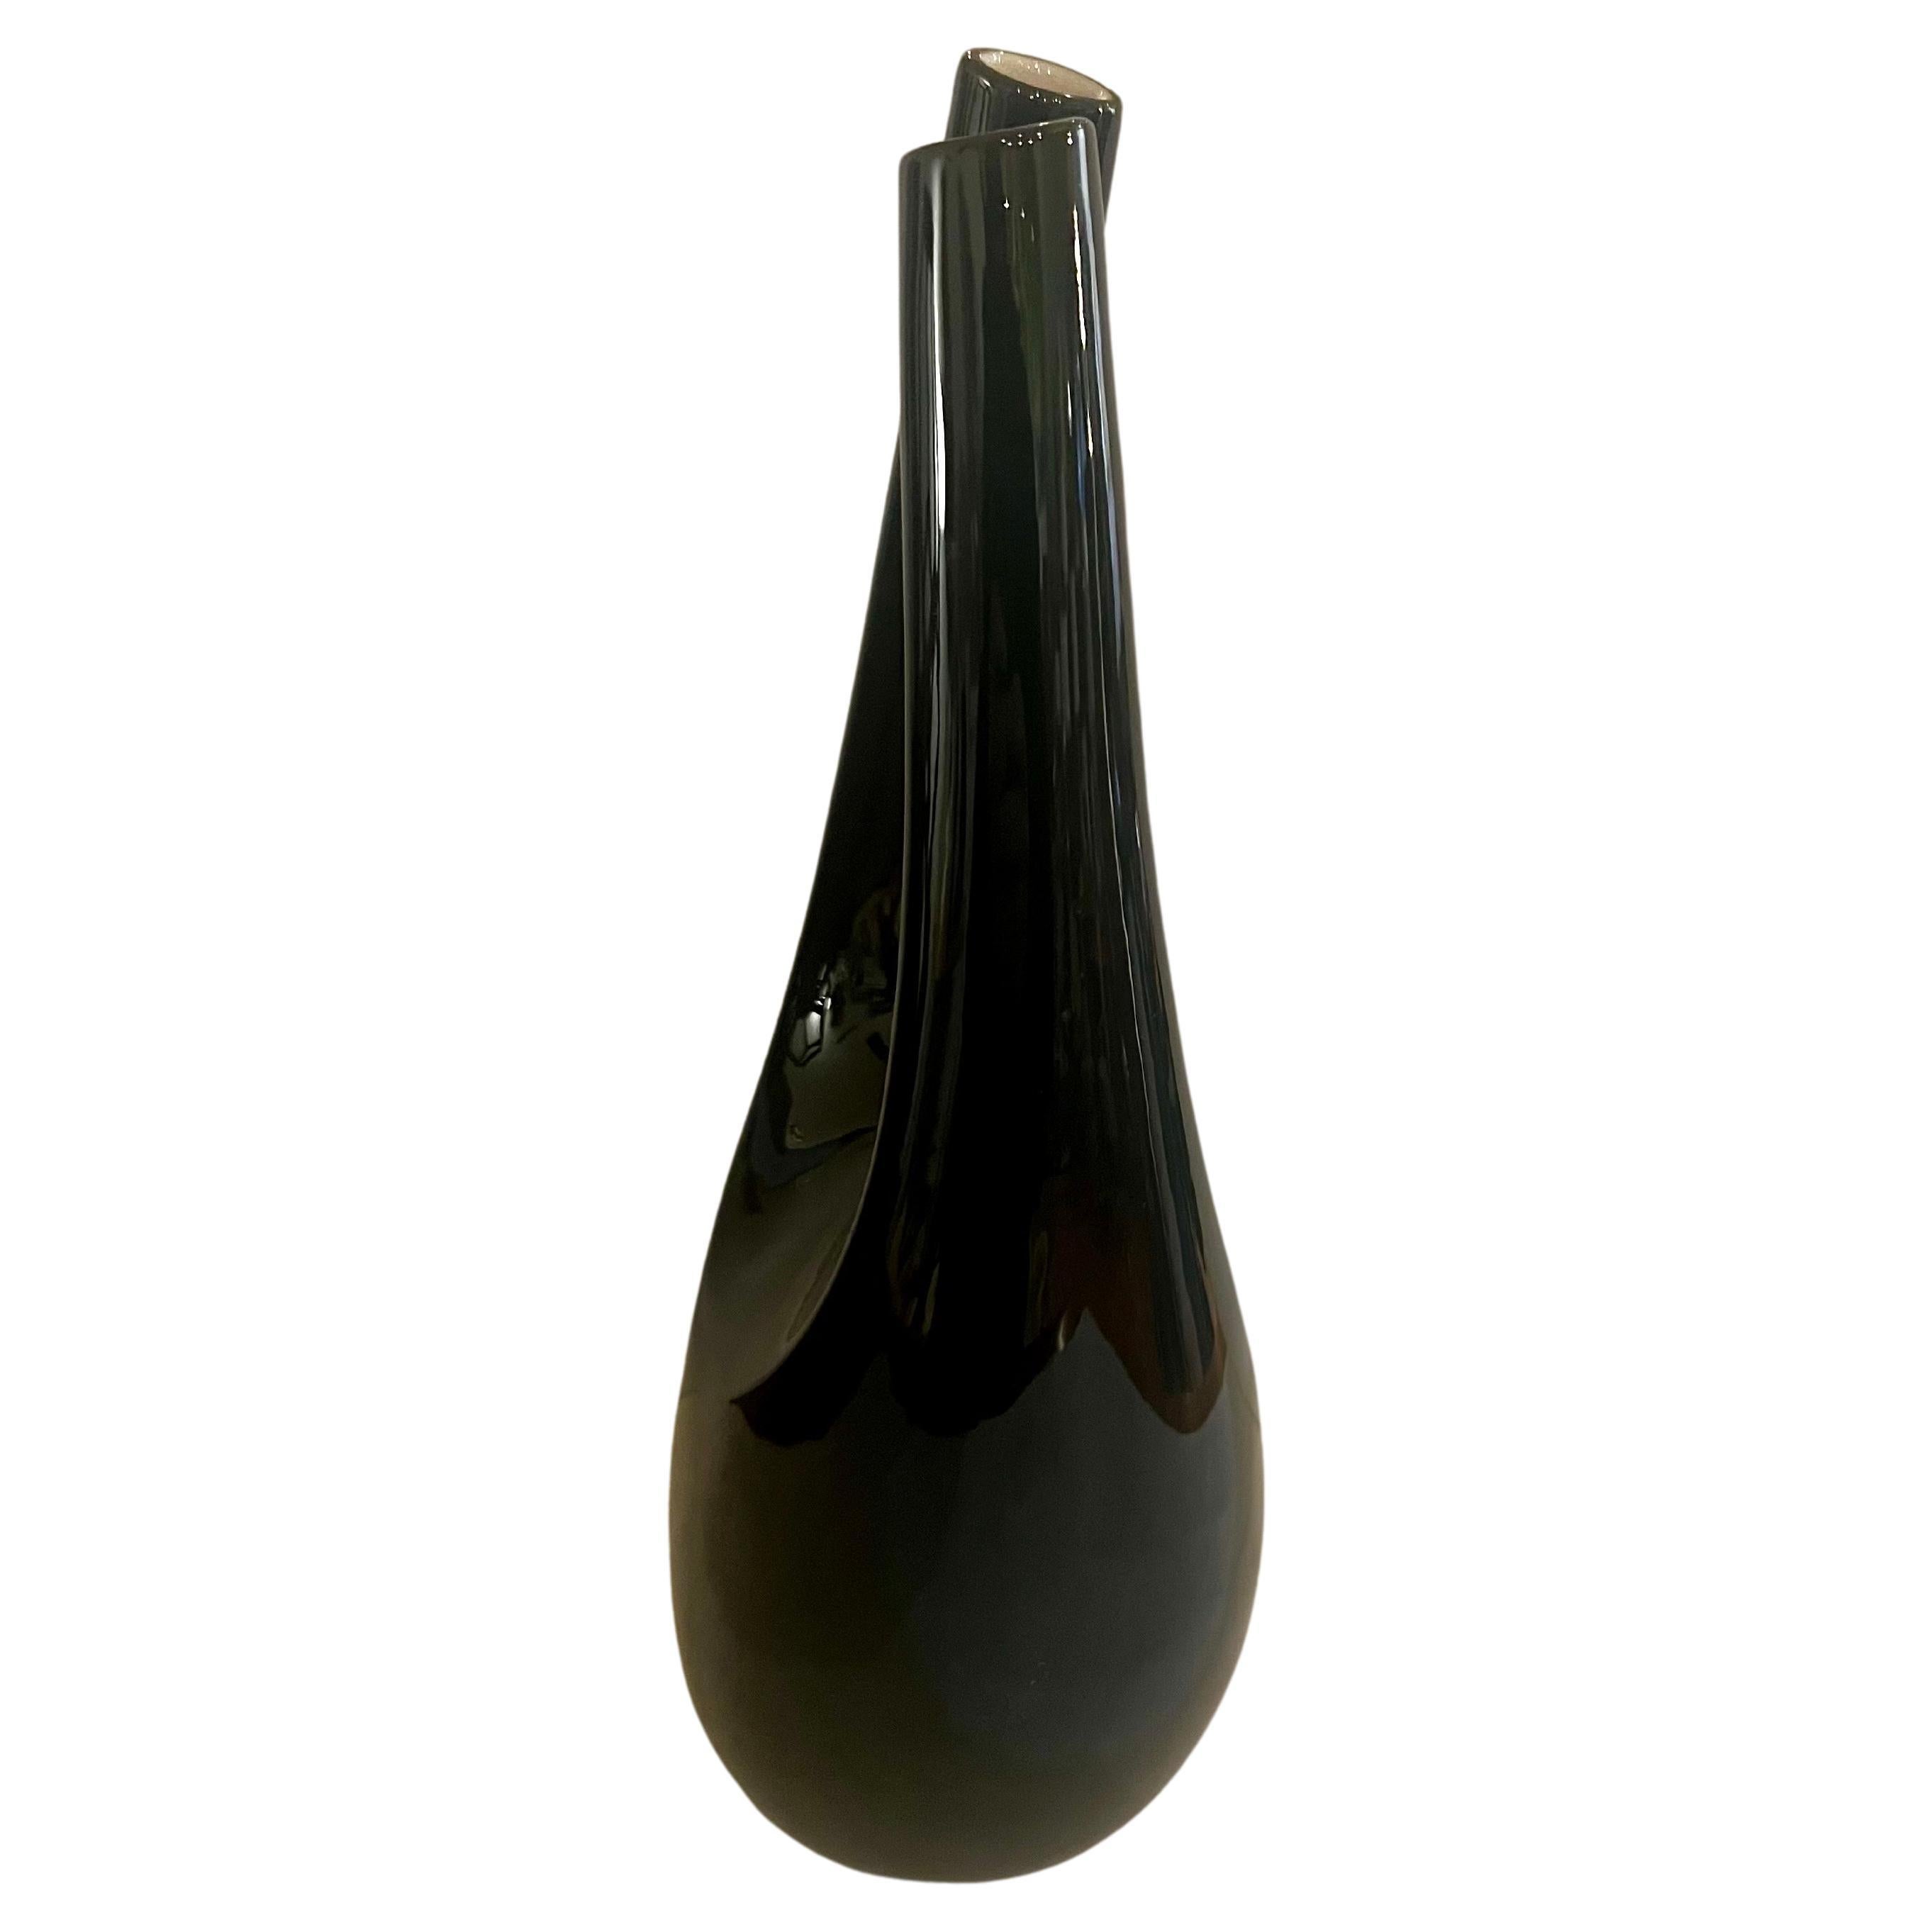 Schöne elegante Porzellan glänzend schwarz und weiß innen doppelte gedrehten Kopf Vase circa 1960's von Franciscan China.